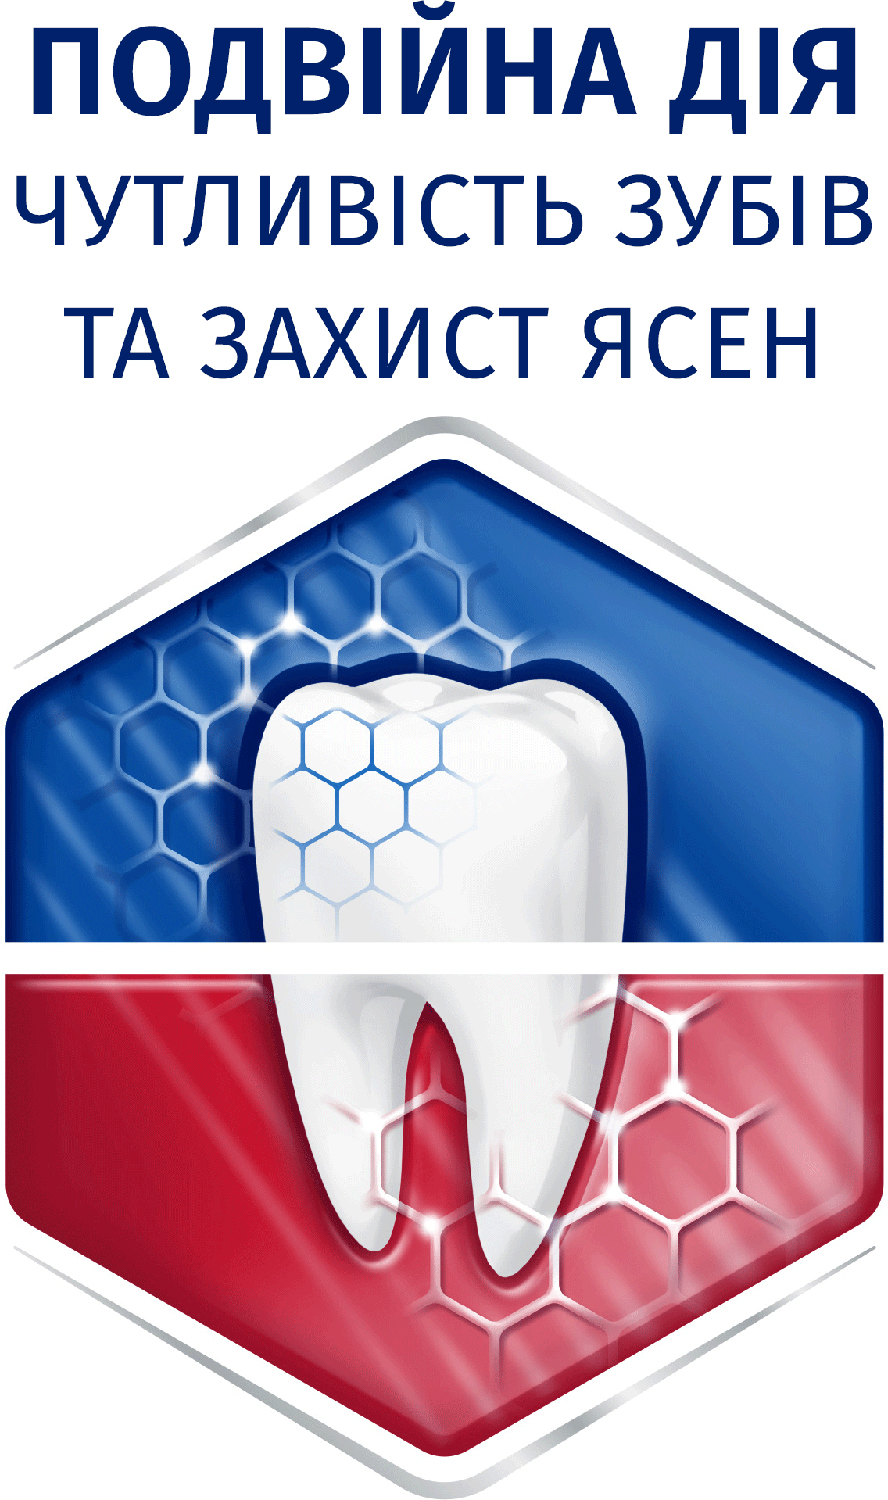 Зубна паста Sensodyne Чутливість зубів та захист ясен, 75 мл - фото 3